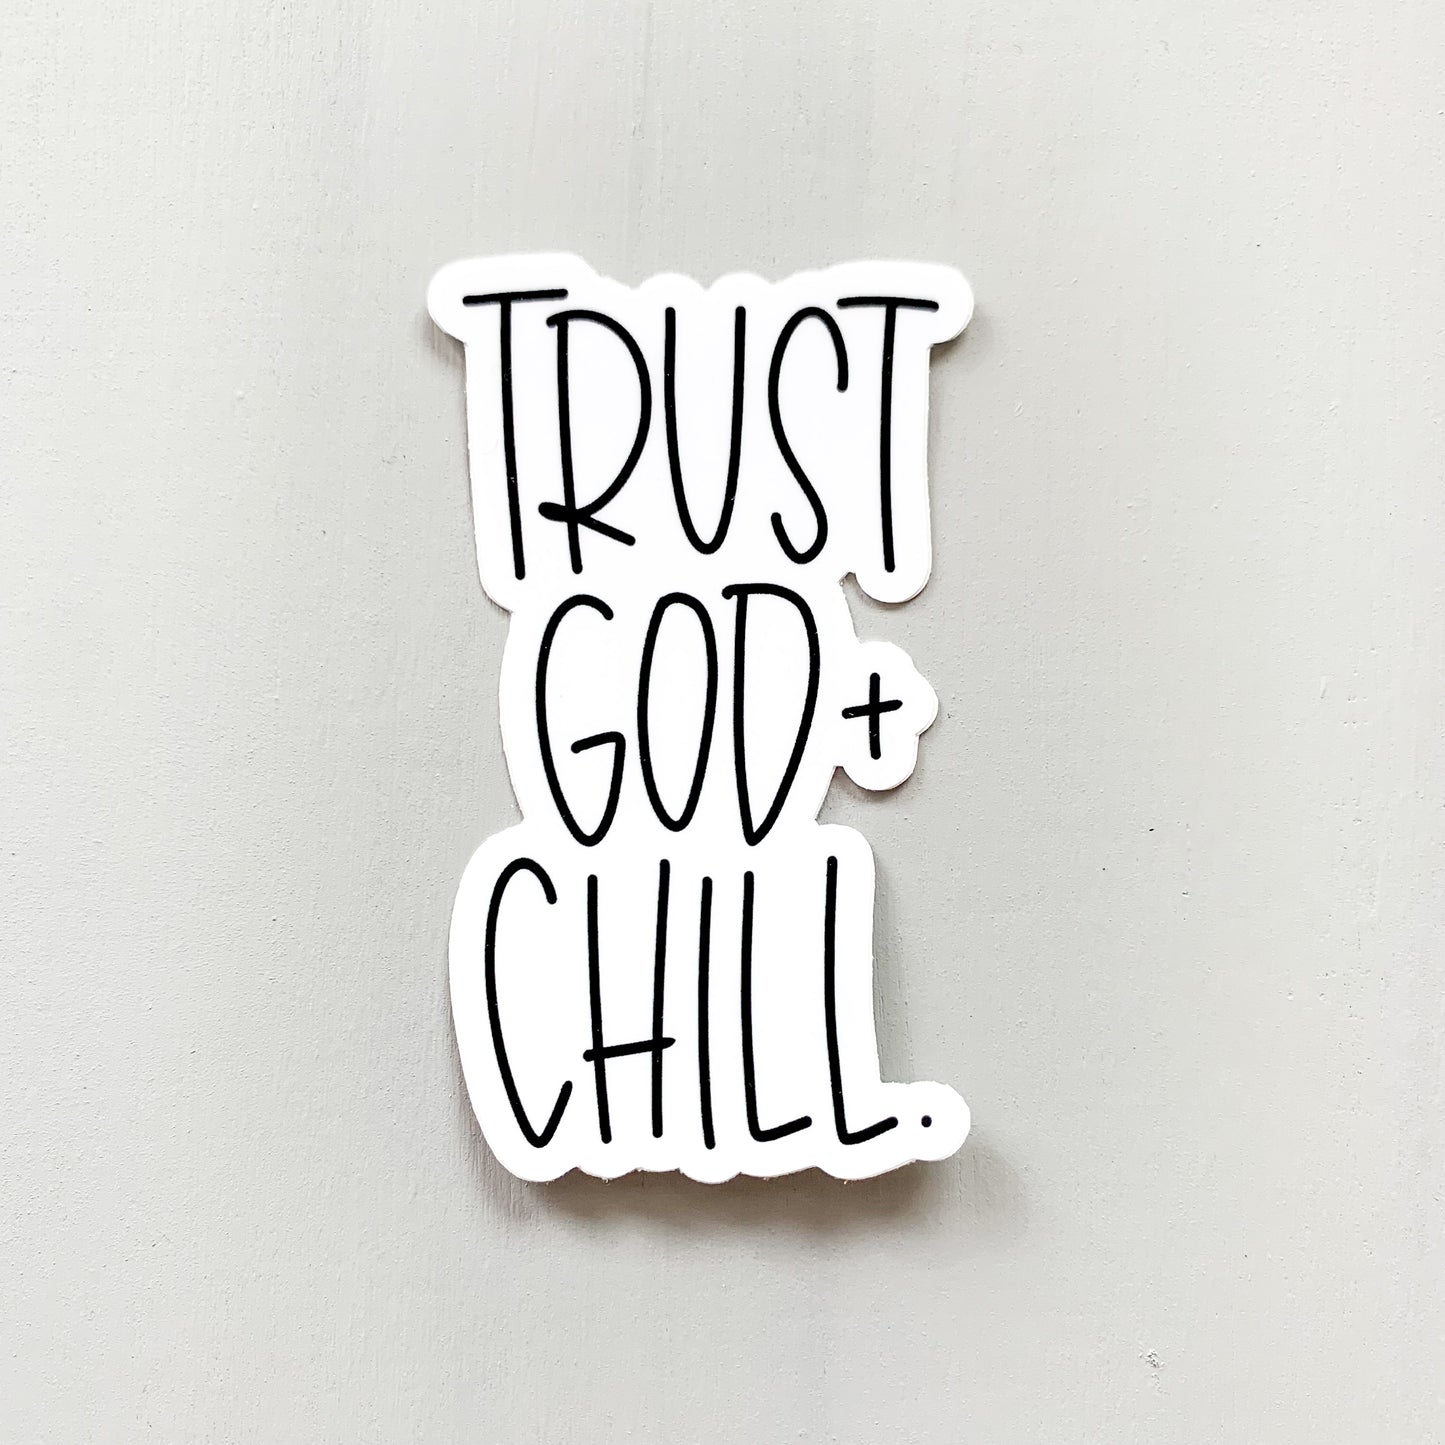 Trust God + Chill — Sticker